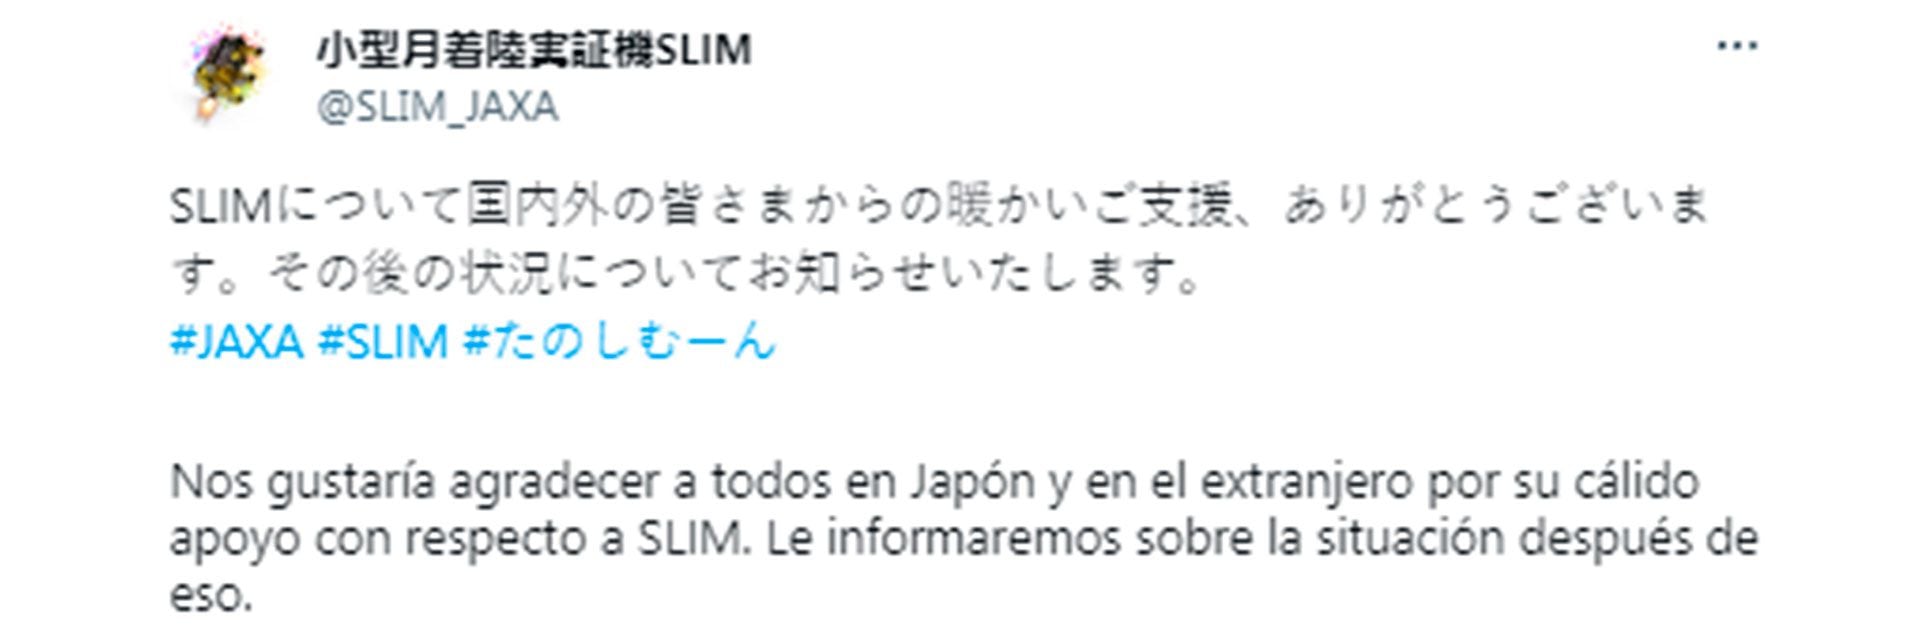 El tweet publicado por la cuenta oficial de SLIM.